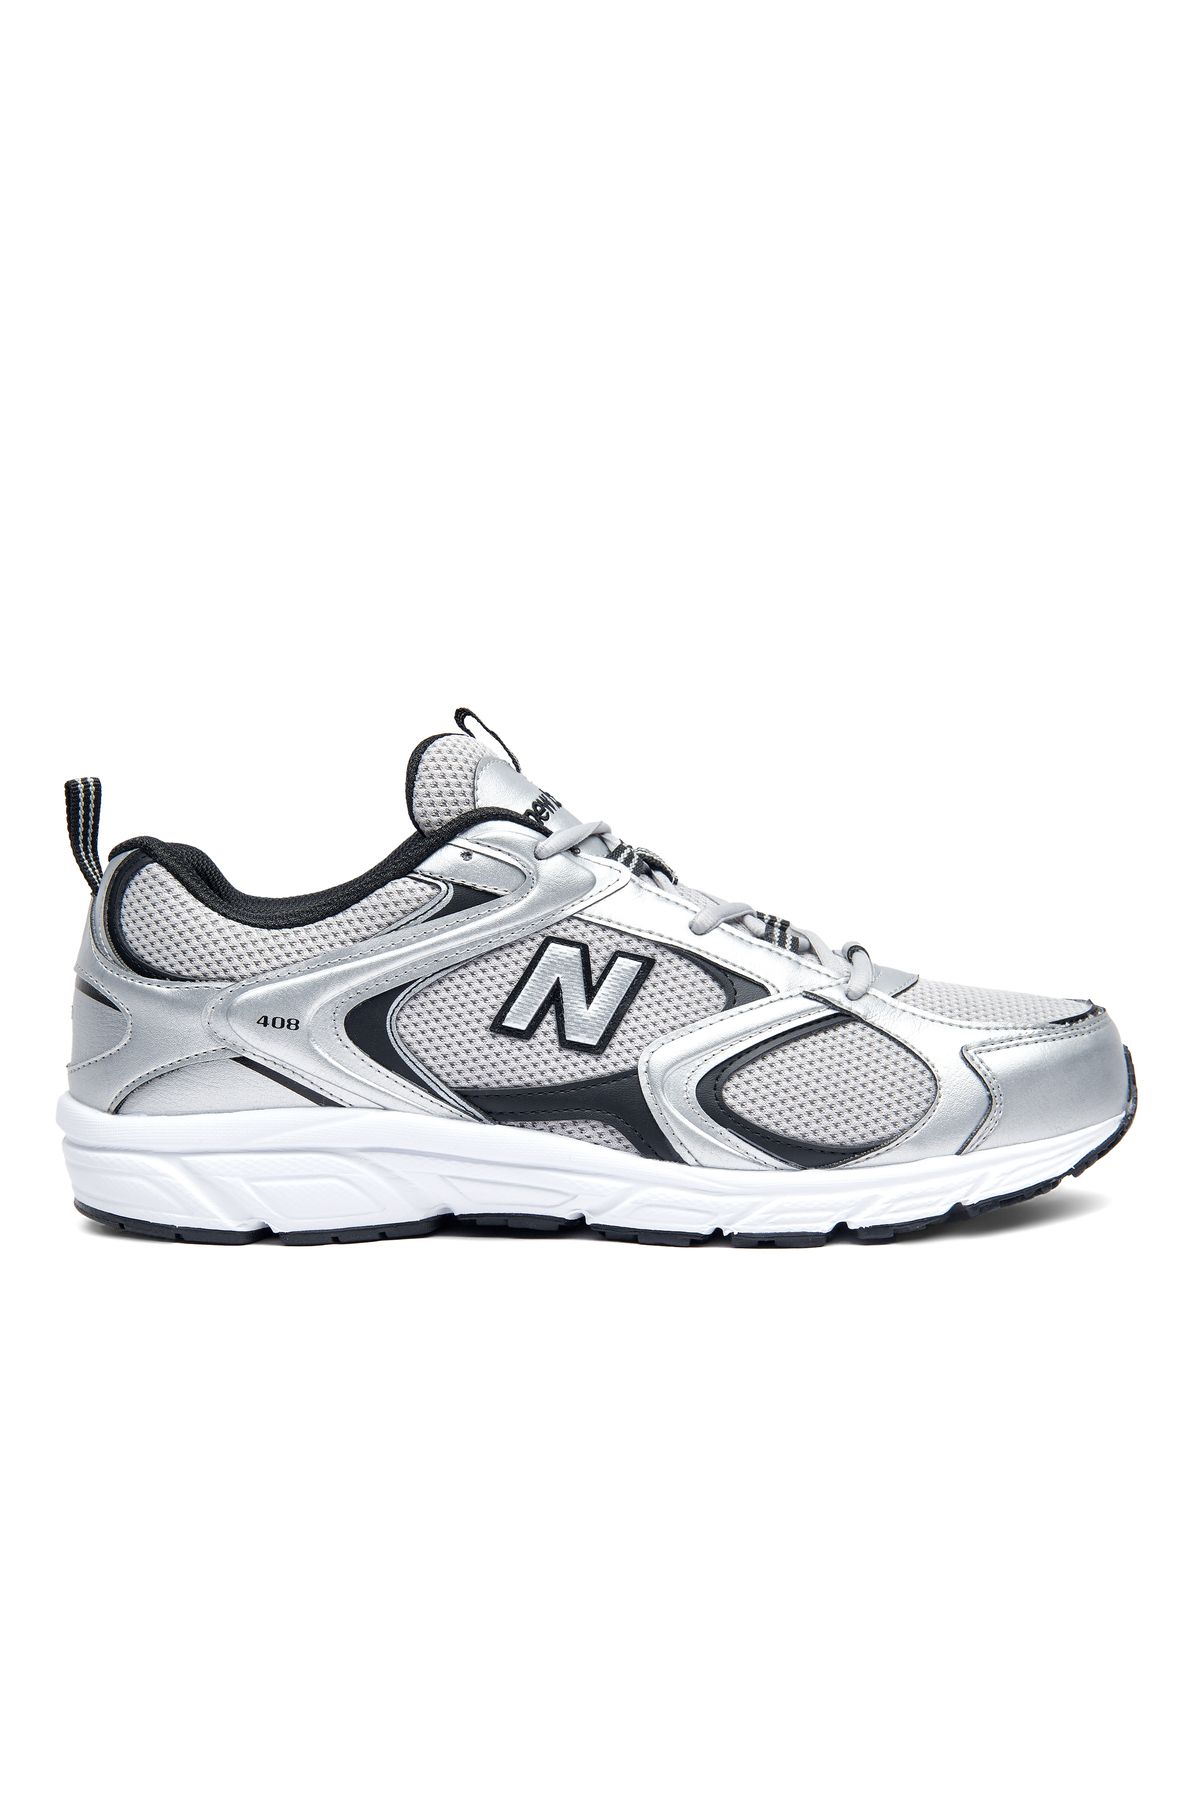 New Balance 408 Unisex Grey Silver Sneaker Spor Ayakkabı